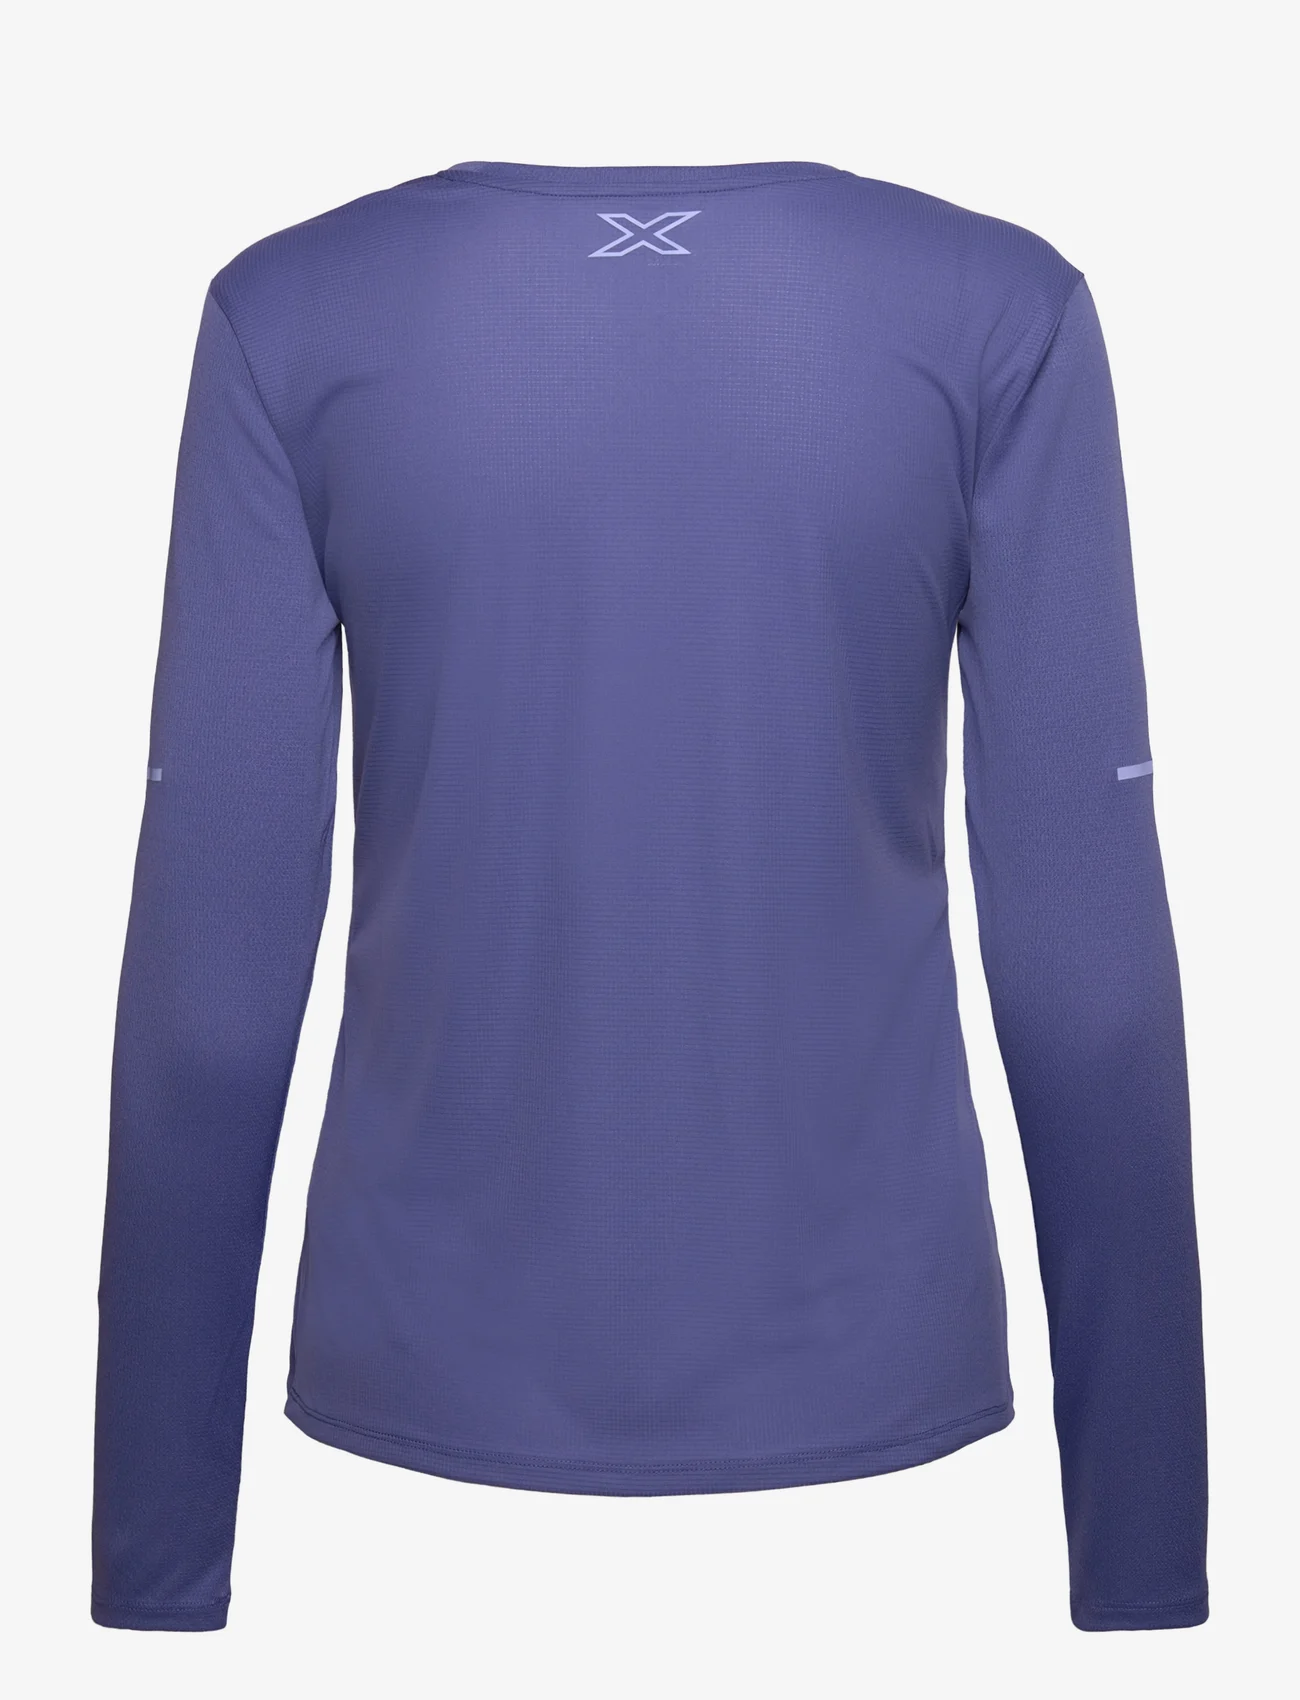 2XU - AERO L/S - t-shirts & tops - marlin/hydrangea reflective - 1